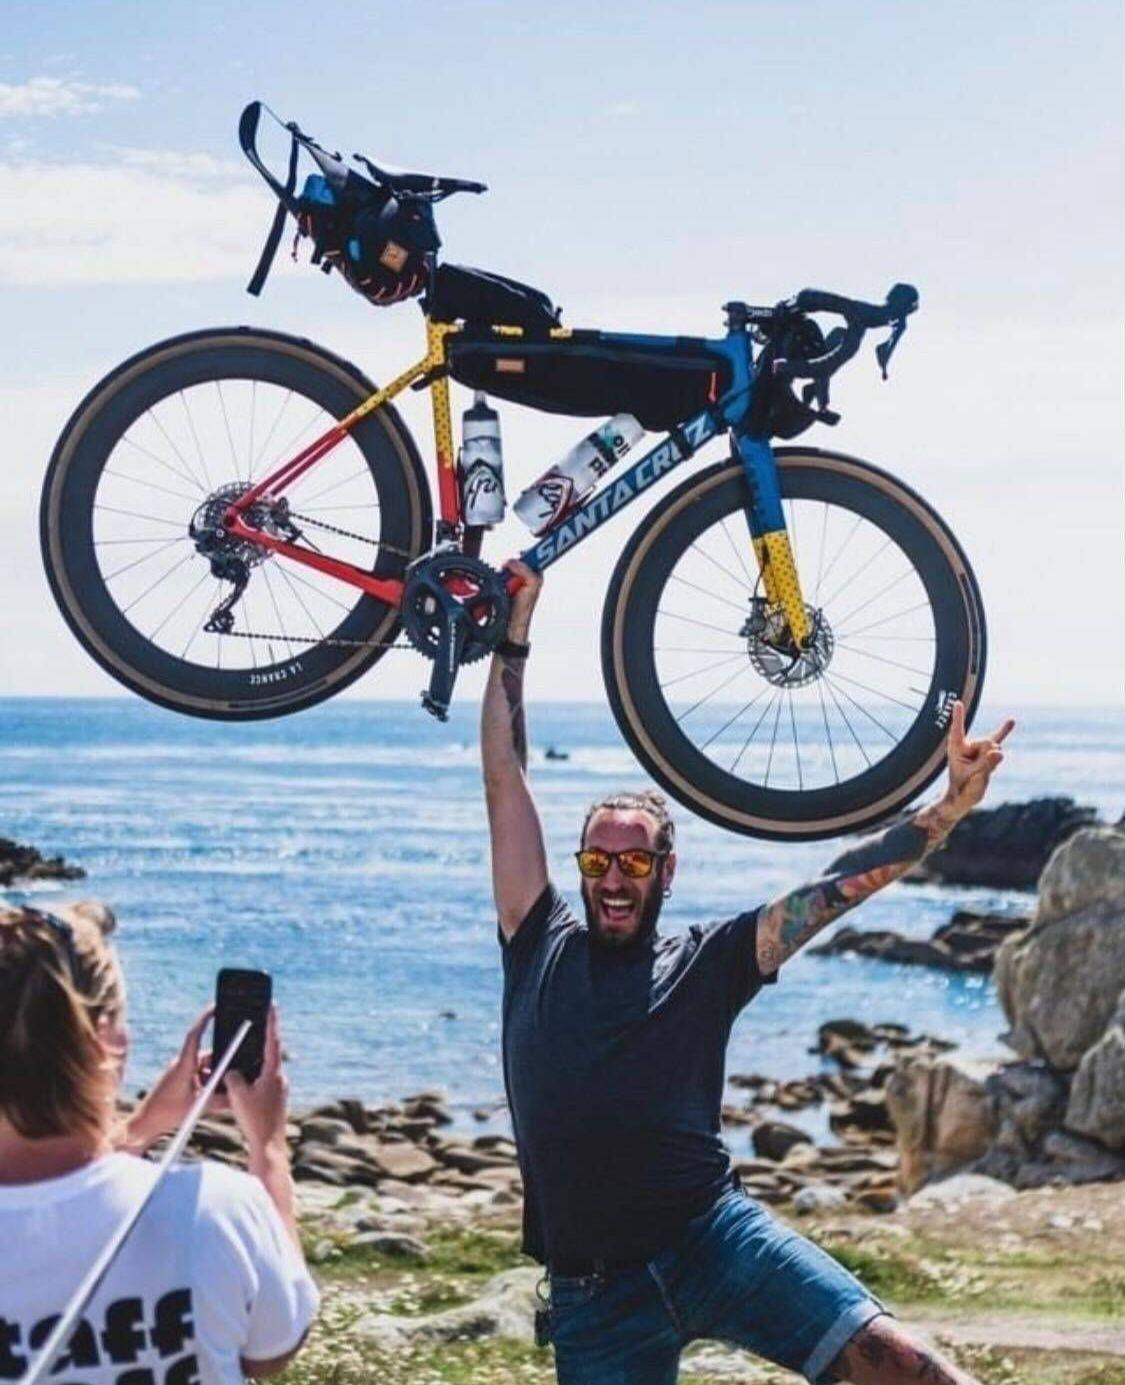 Yoann de l'équipe Cyclofix, heureux de traverser la France à vélo.